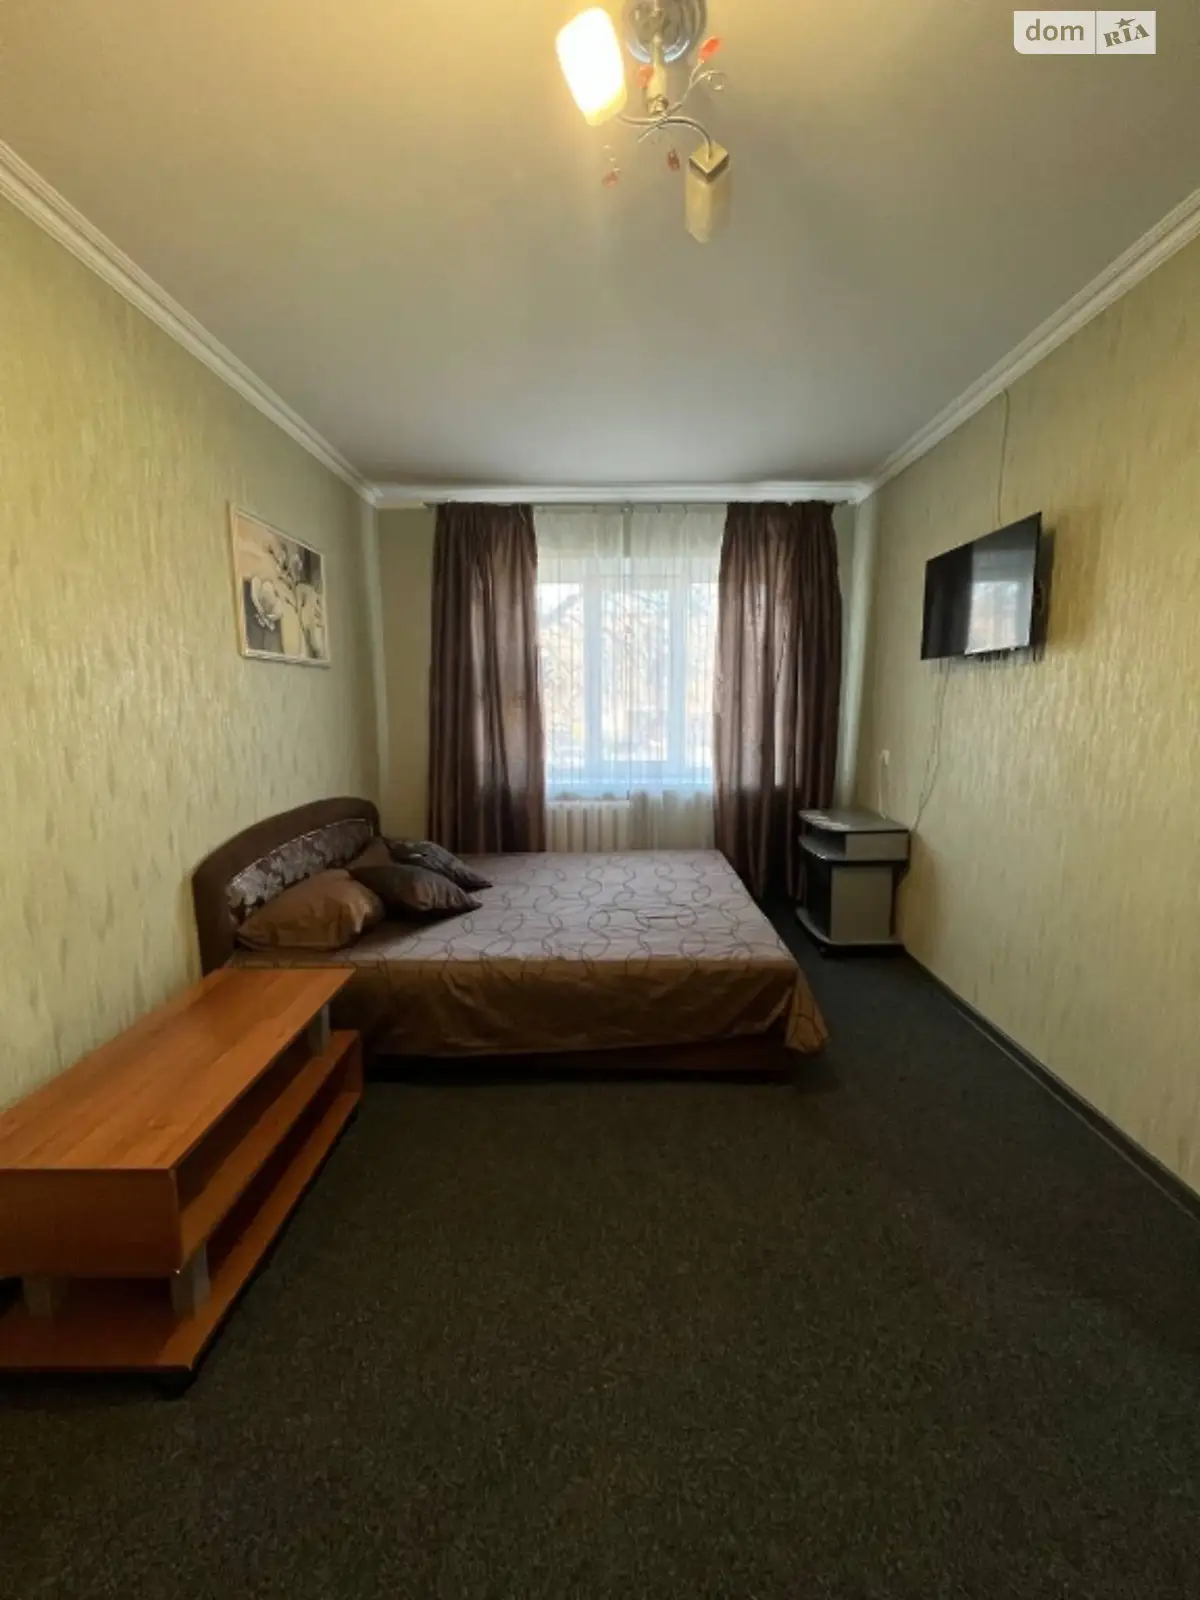 1-кімнатна квартира у Запоріжжі, цена: 900 грн - фото 1